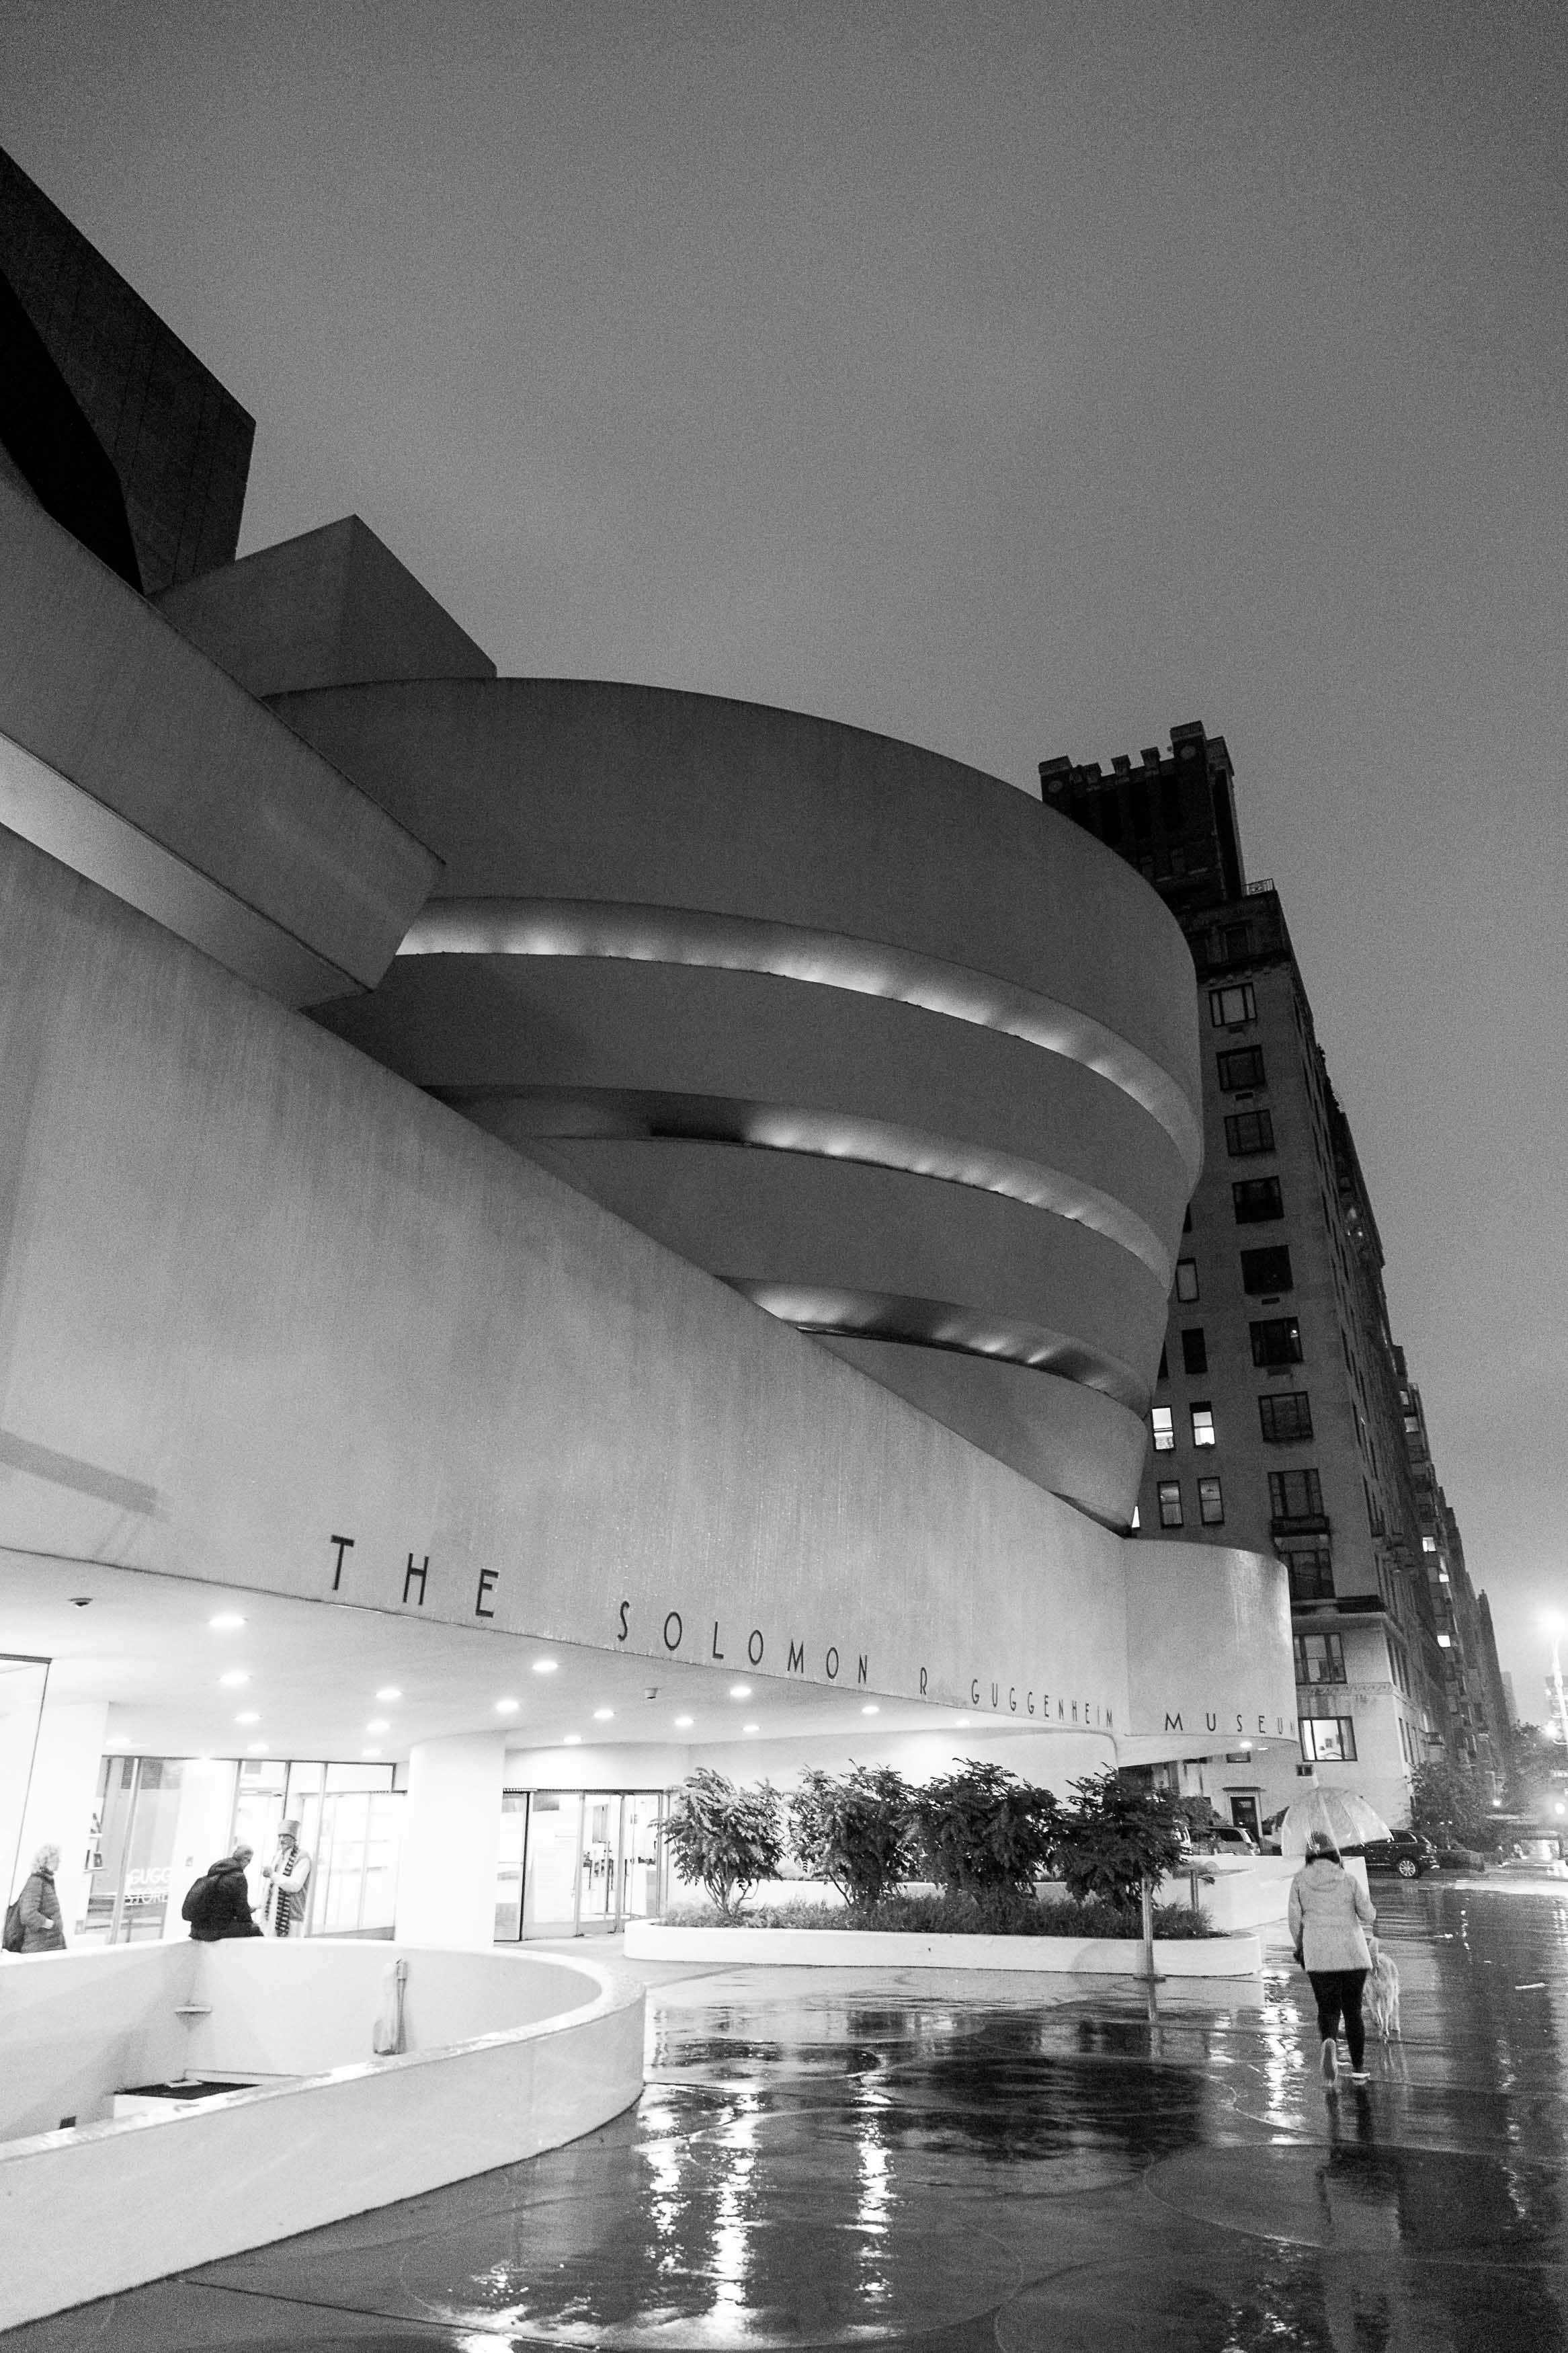 Grustufenfoto des aus Men in Black bekannten Guggenheim Museums